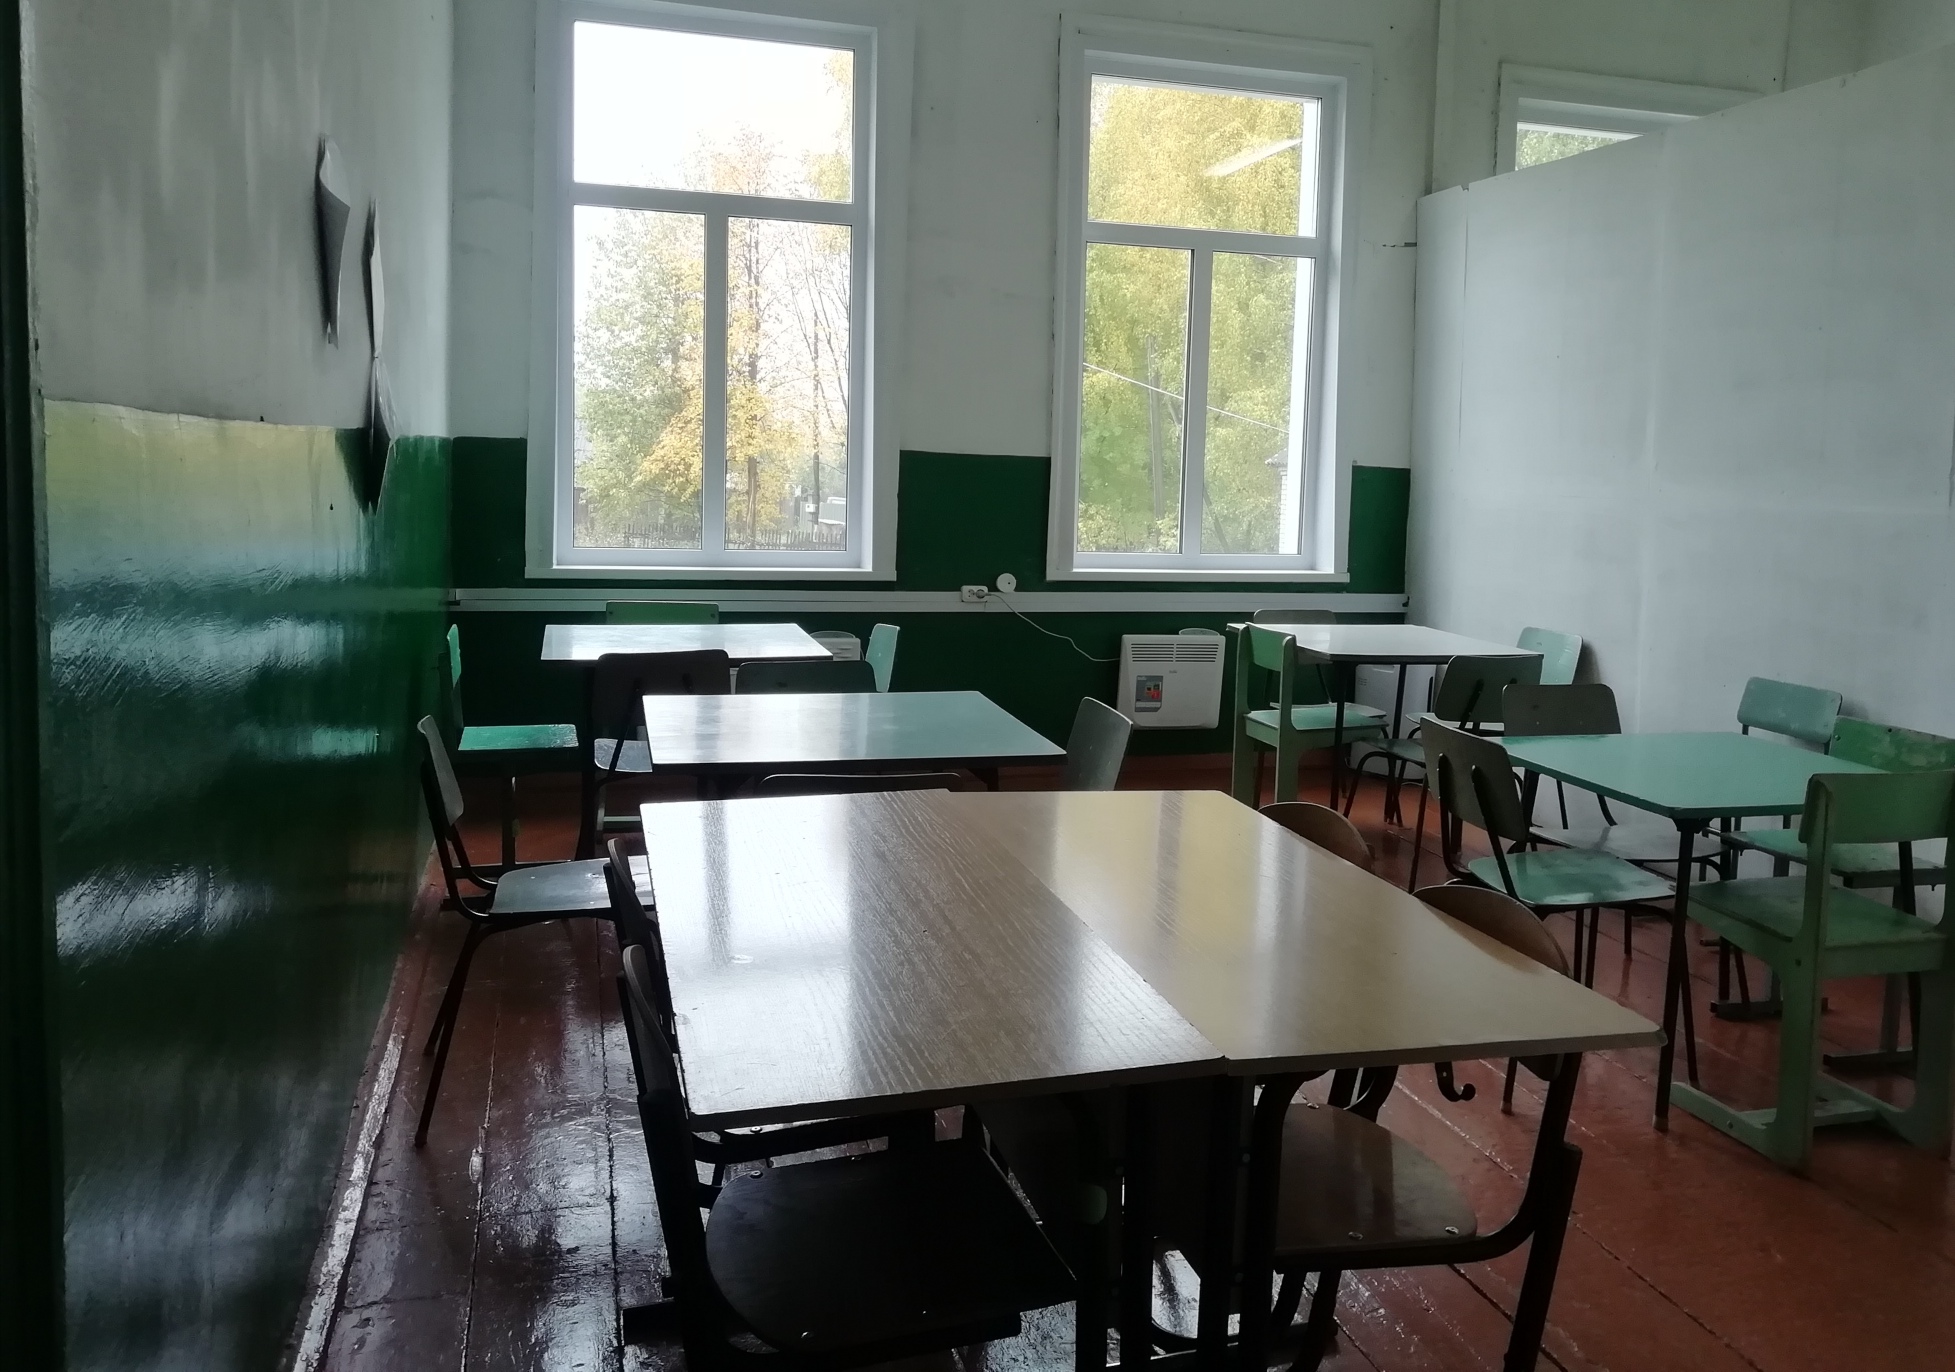 Обеденный зал столовой школы.